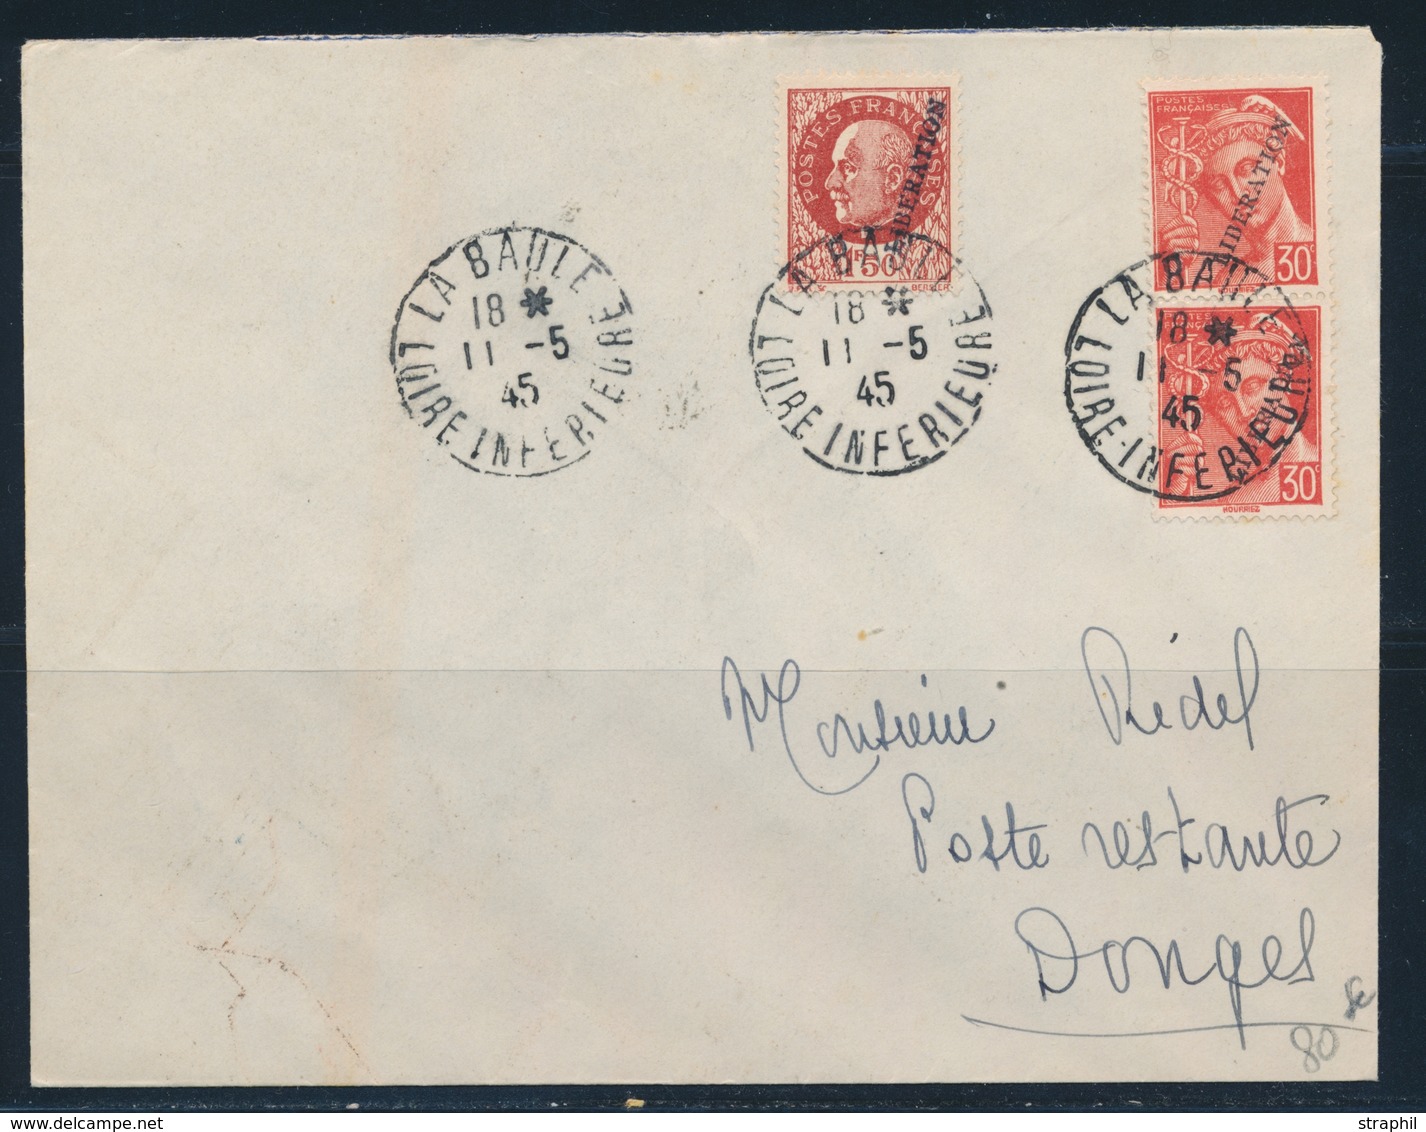 L POCHE DE SAINT NAZAIRE - Pli De La Baule Les Pins - 11/5/45 - Afft à 2F10 (Pétain + Mercure) - Pr Donges - TB - War Stamps